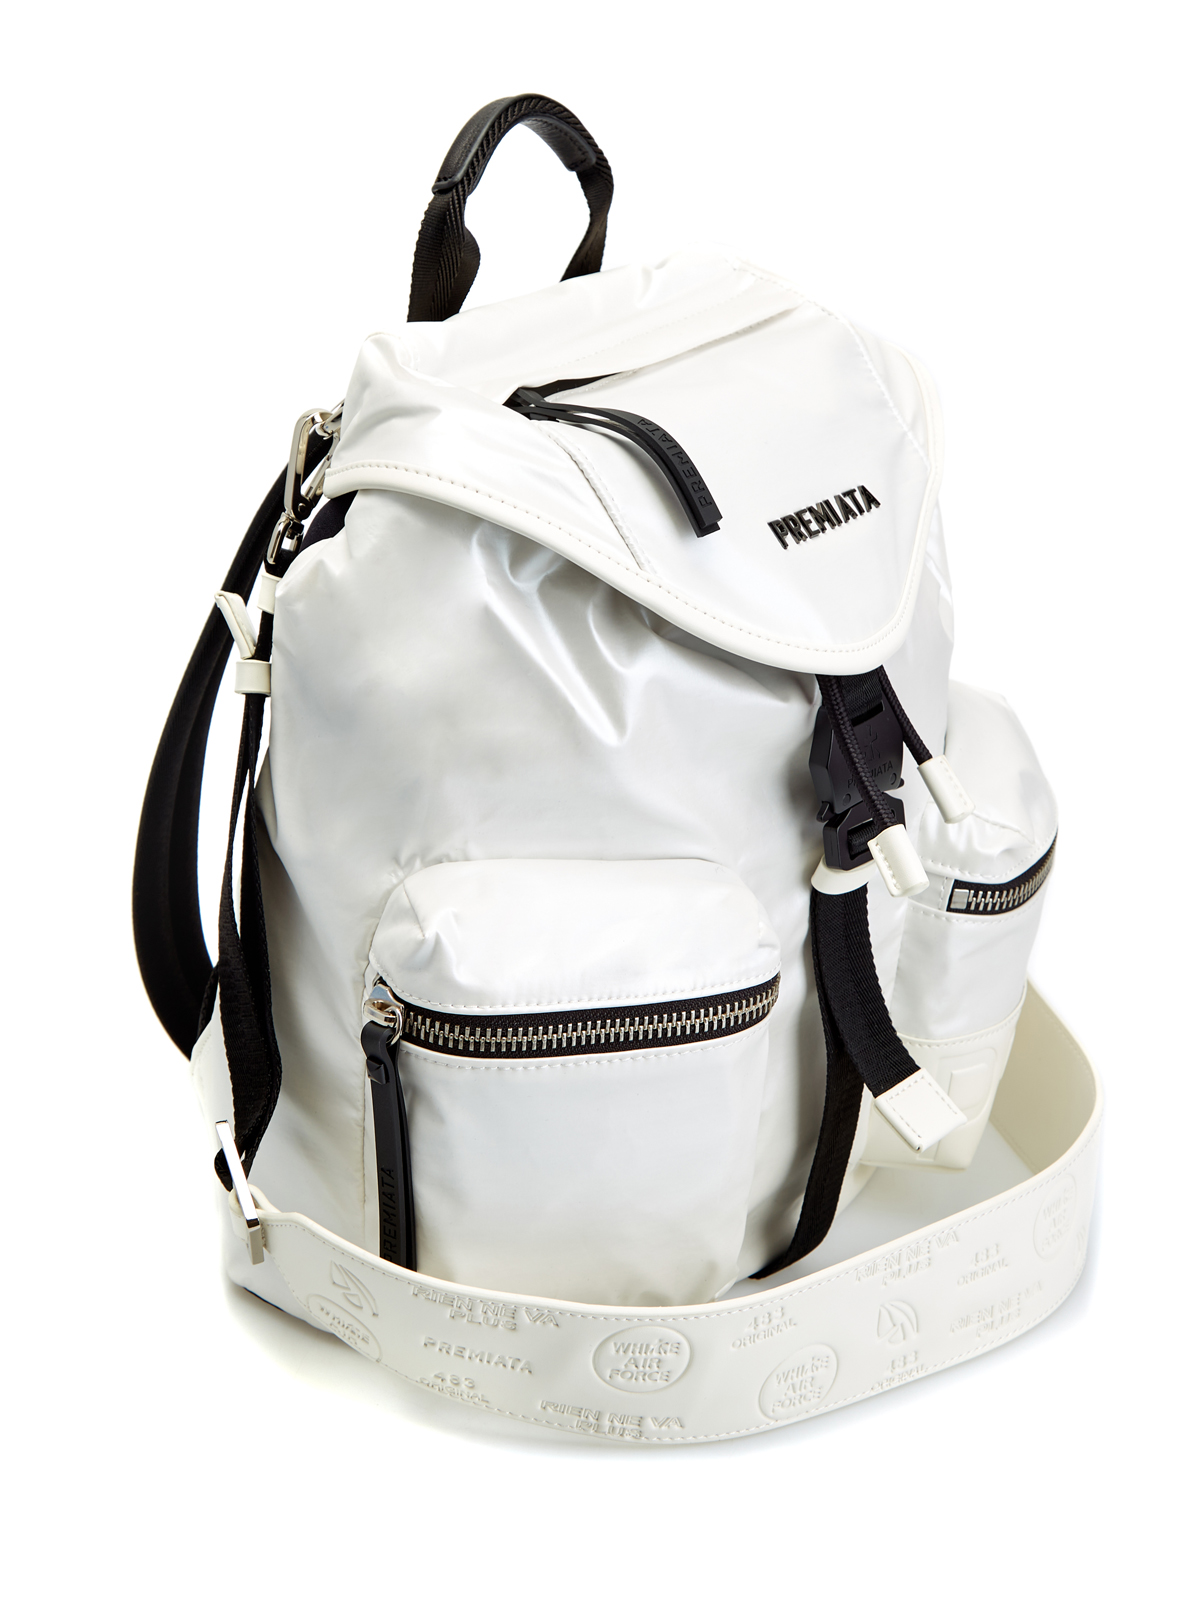 Функциональный рюкзак Lyn с кожаной отделкой и съемным ремнем PREMIATA, цвет белый, размер S;M - фото 3